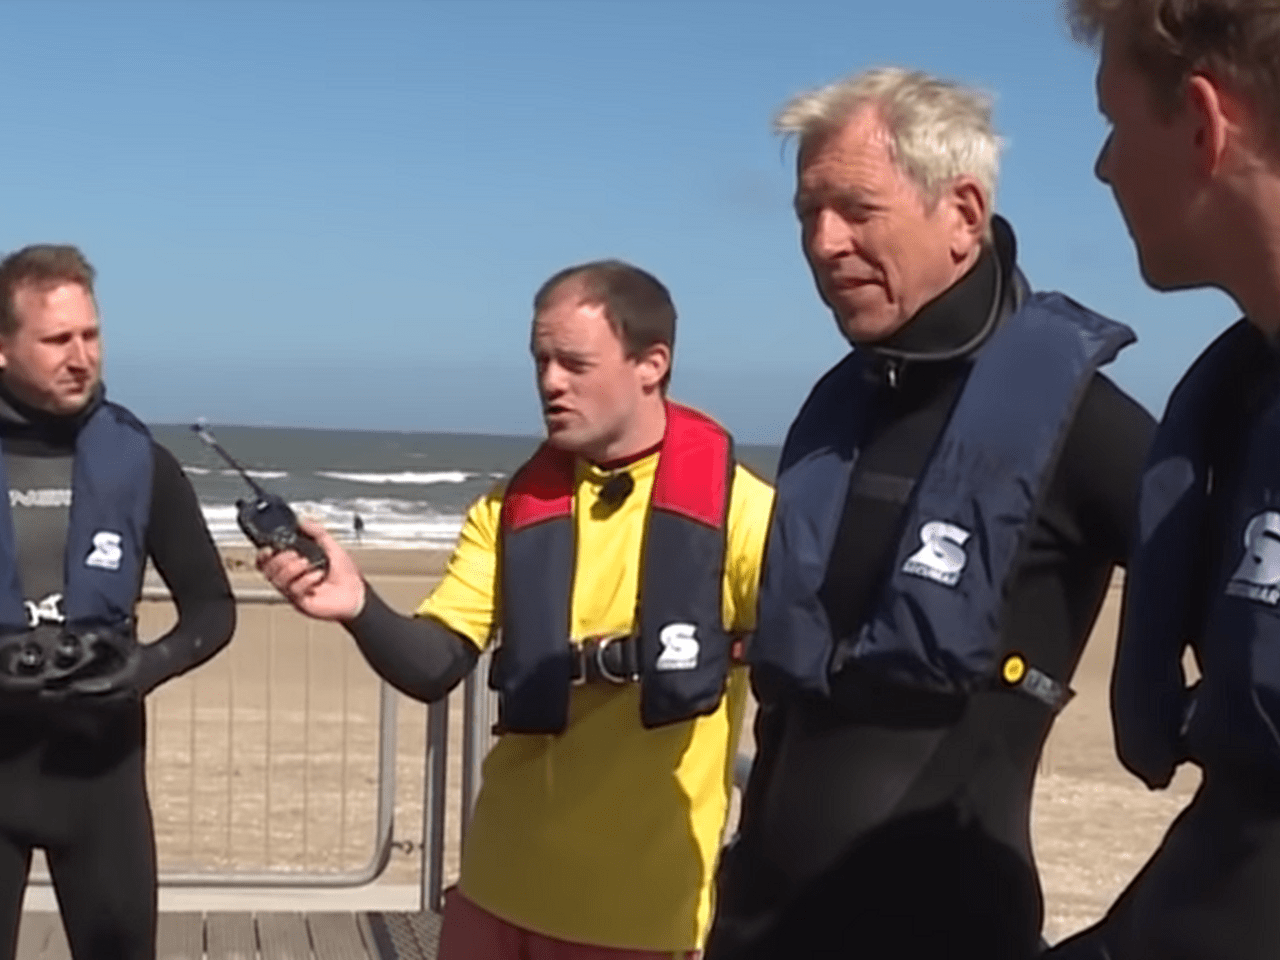 Lifeguards overleggen op strand